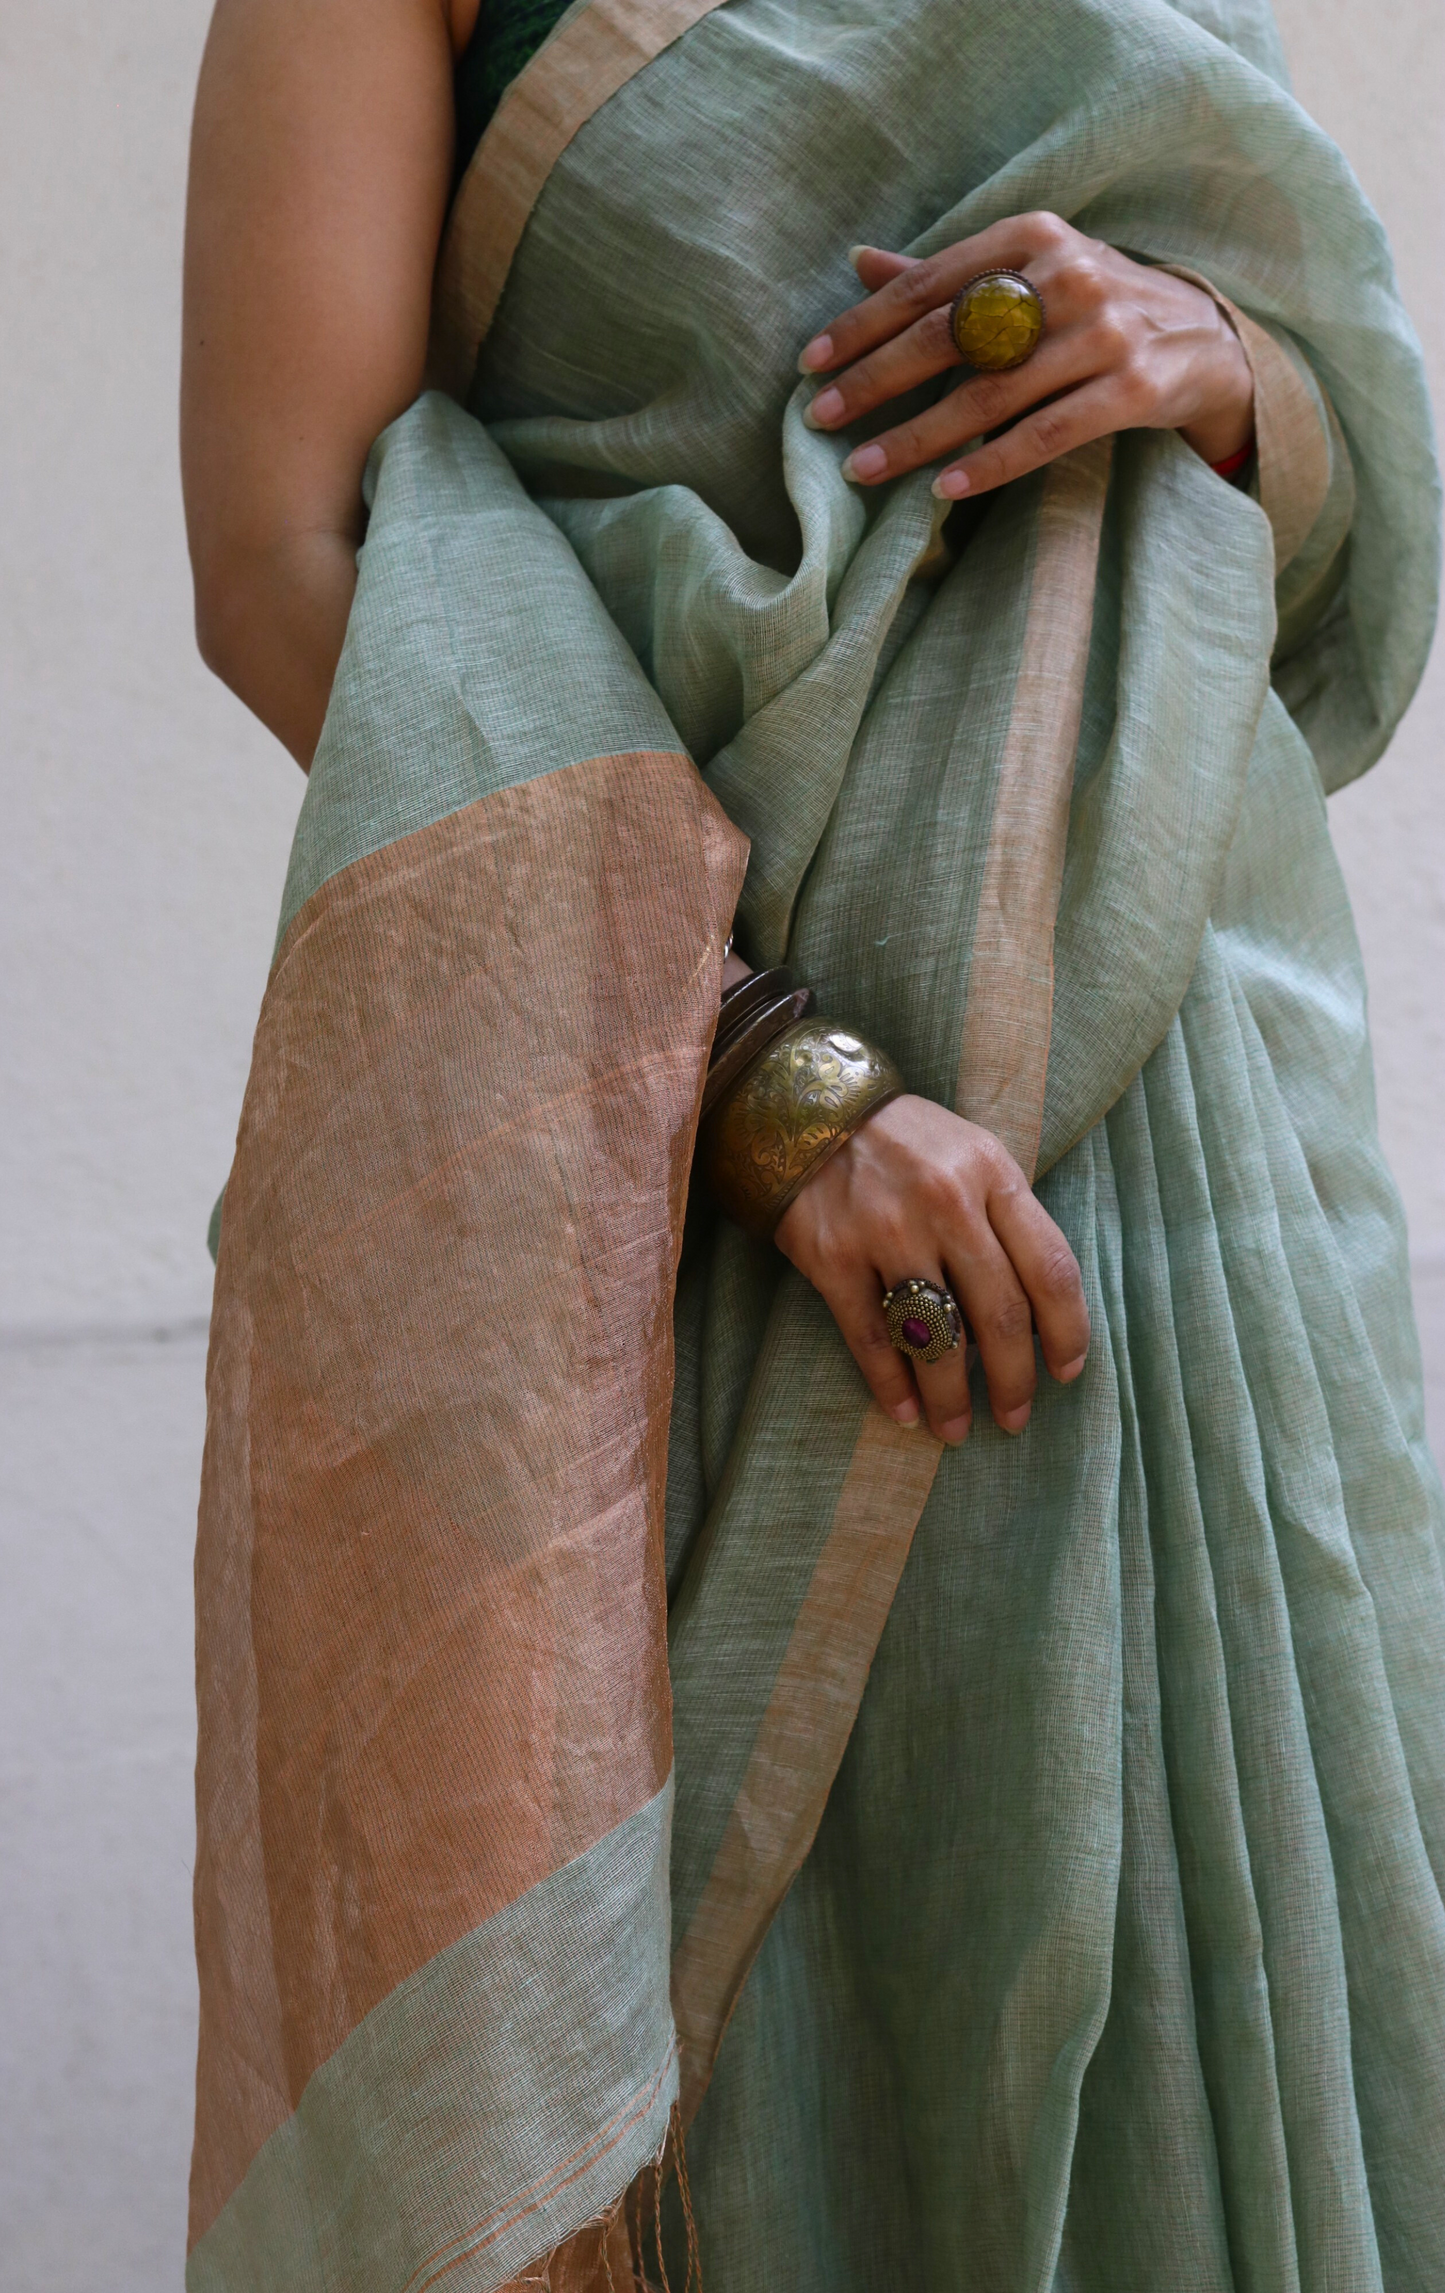 Buy Silk Linen 'New Leaf' Gold Metallic Sari : Light Green Gold Silk Linen Summer Saree